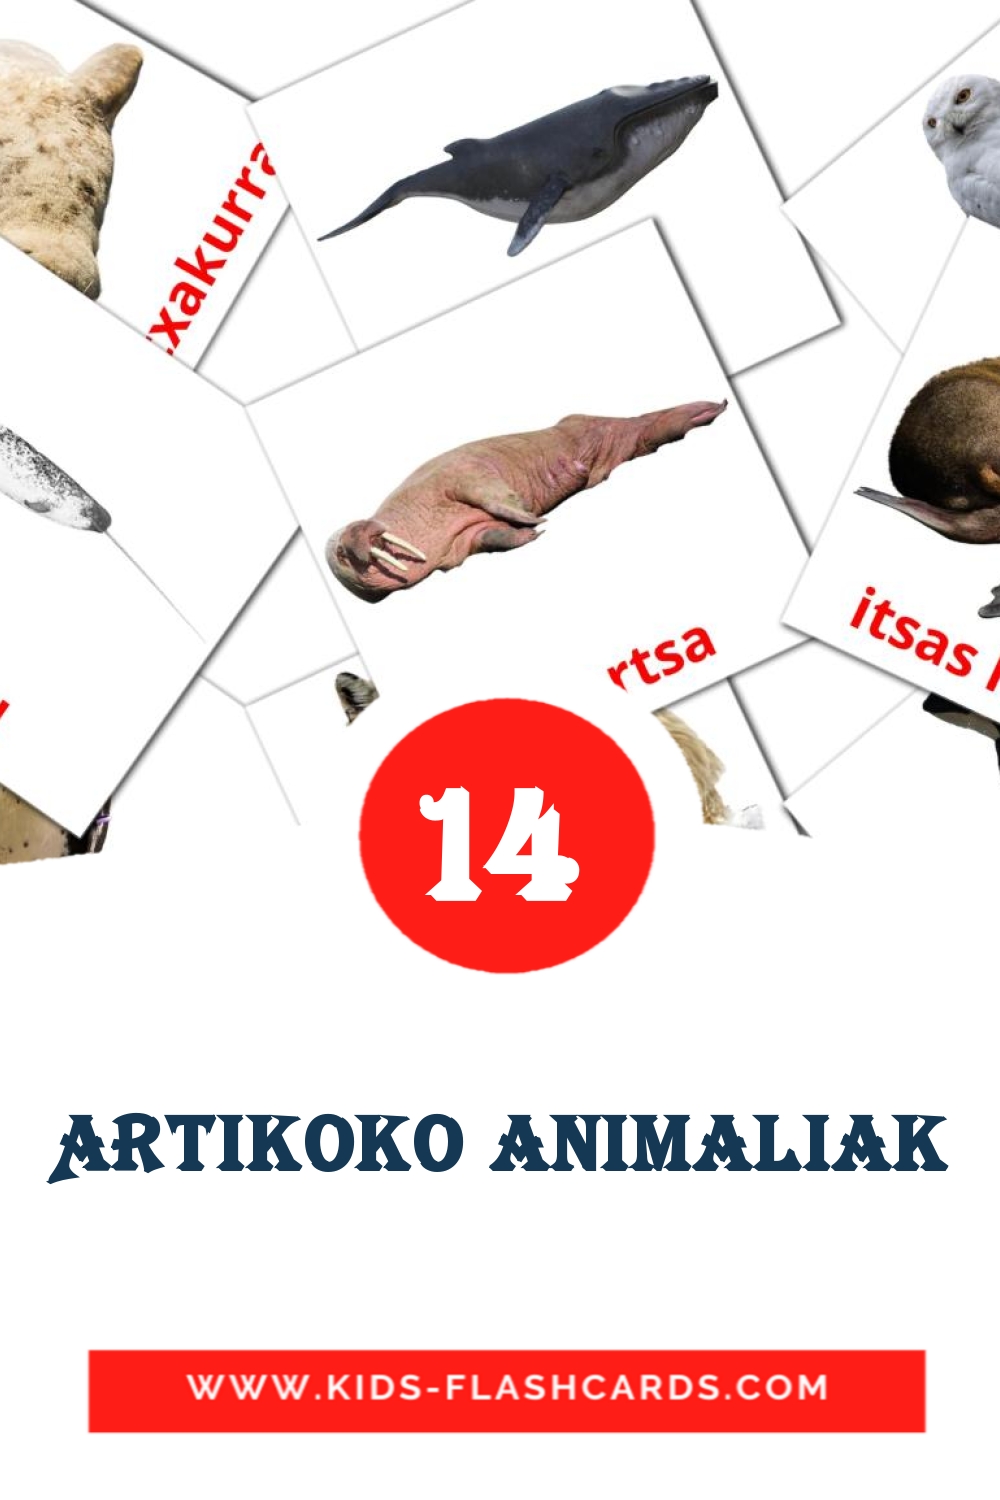 14 Artikoko animaliak fotokaarten voor kleuters in het baskisch